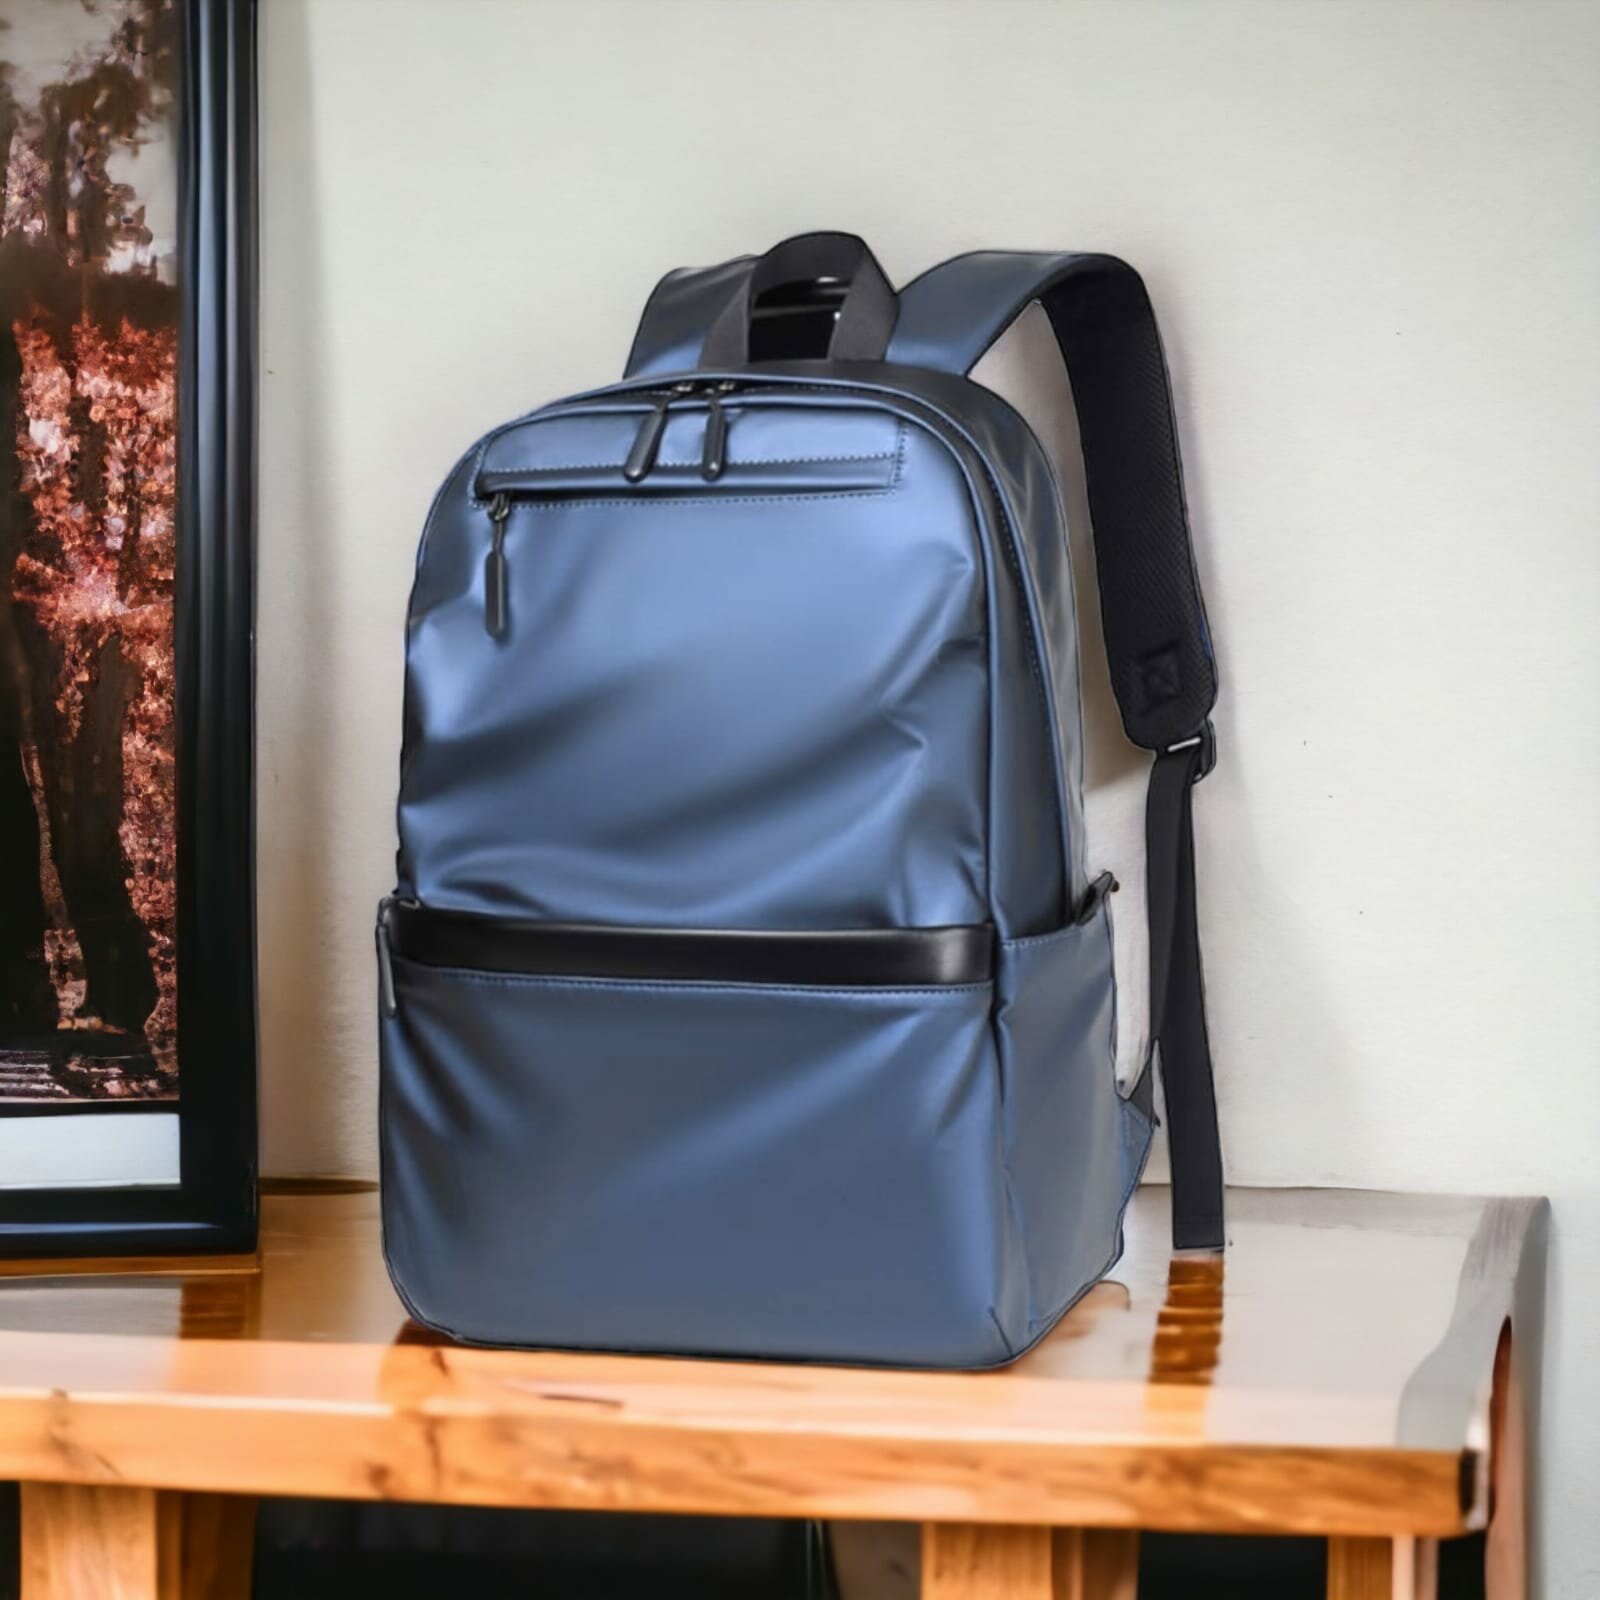 Рюкзак городской мужской/школьный синий / Сумка для путешествий / Спортивный рюкзак/ручная кладь синий